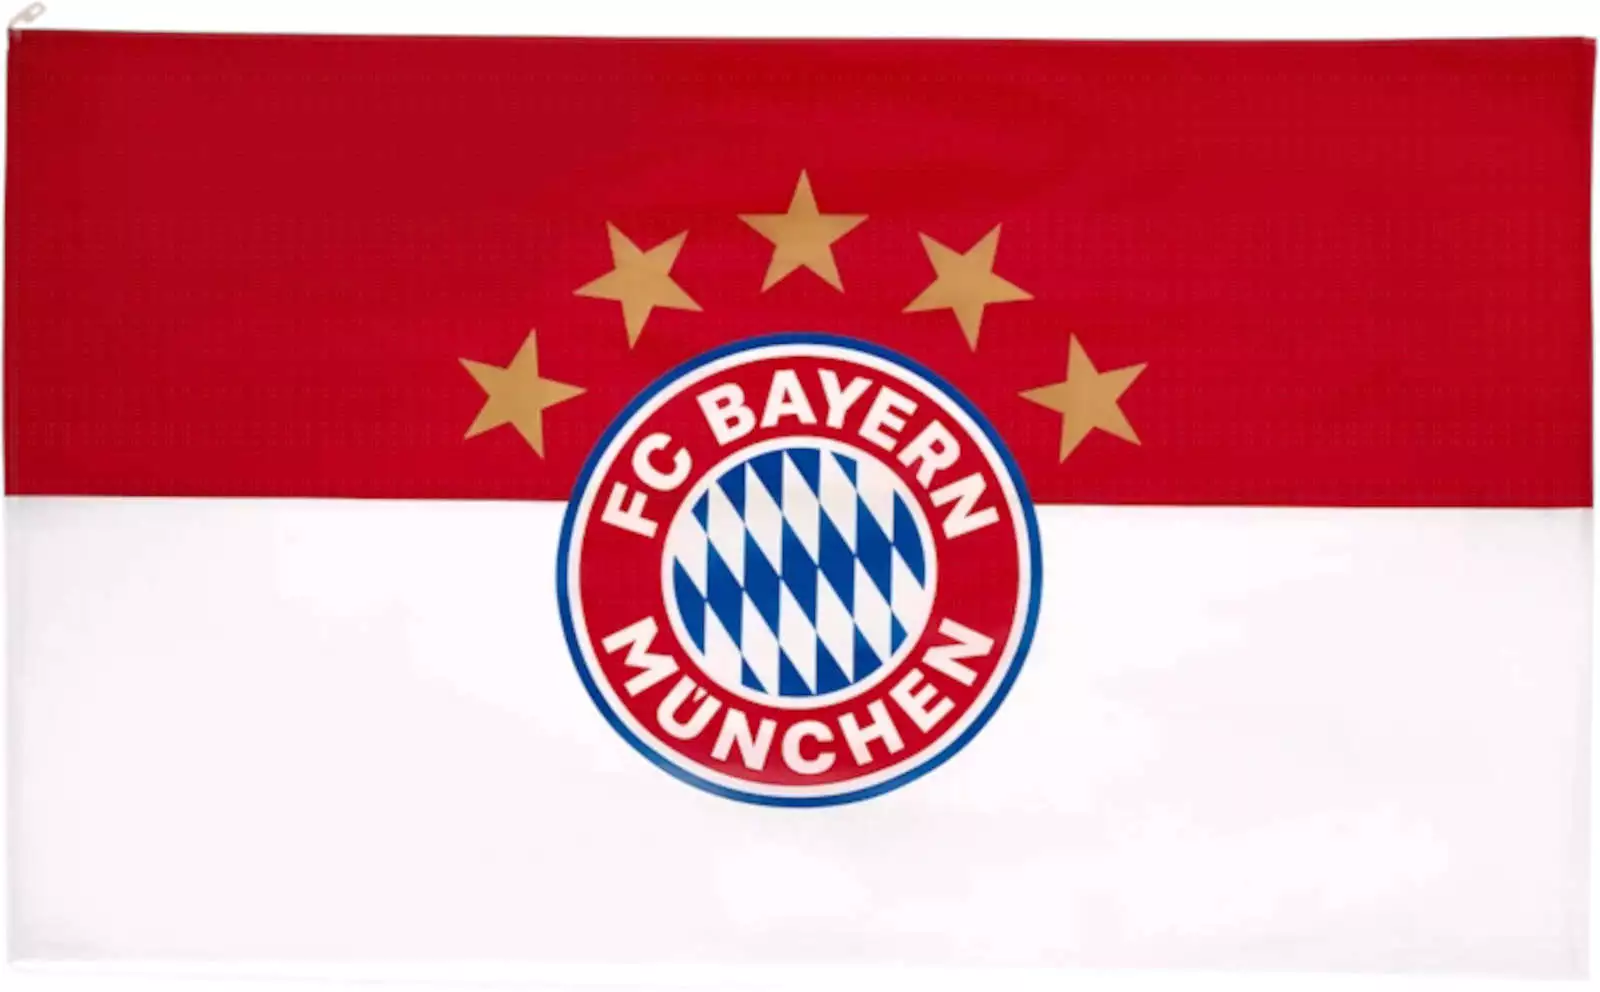 Die FC Bayern München Hissflagge mit dem 5-Sterne-Logo, ein Symbol für die herausragenden Erfolge des Vereins, ein Muss für Bayern-Fans.